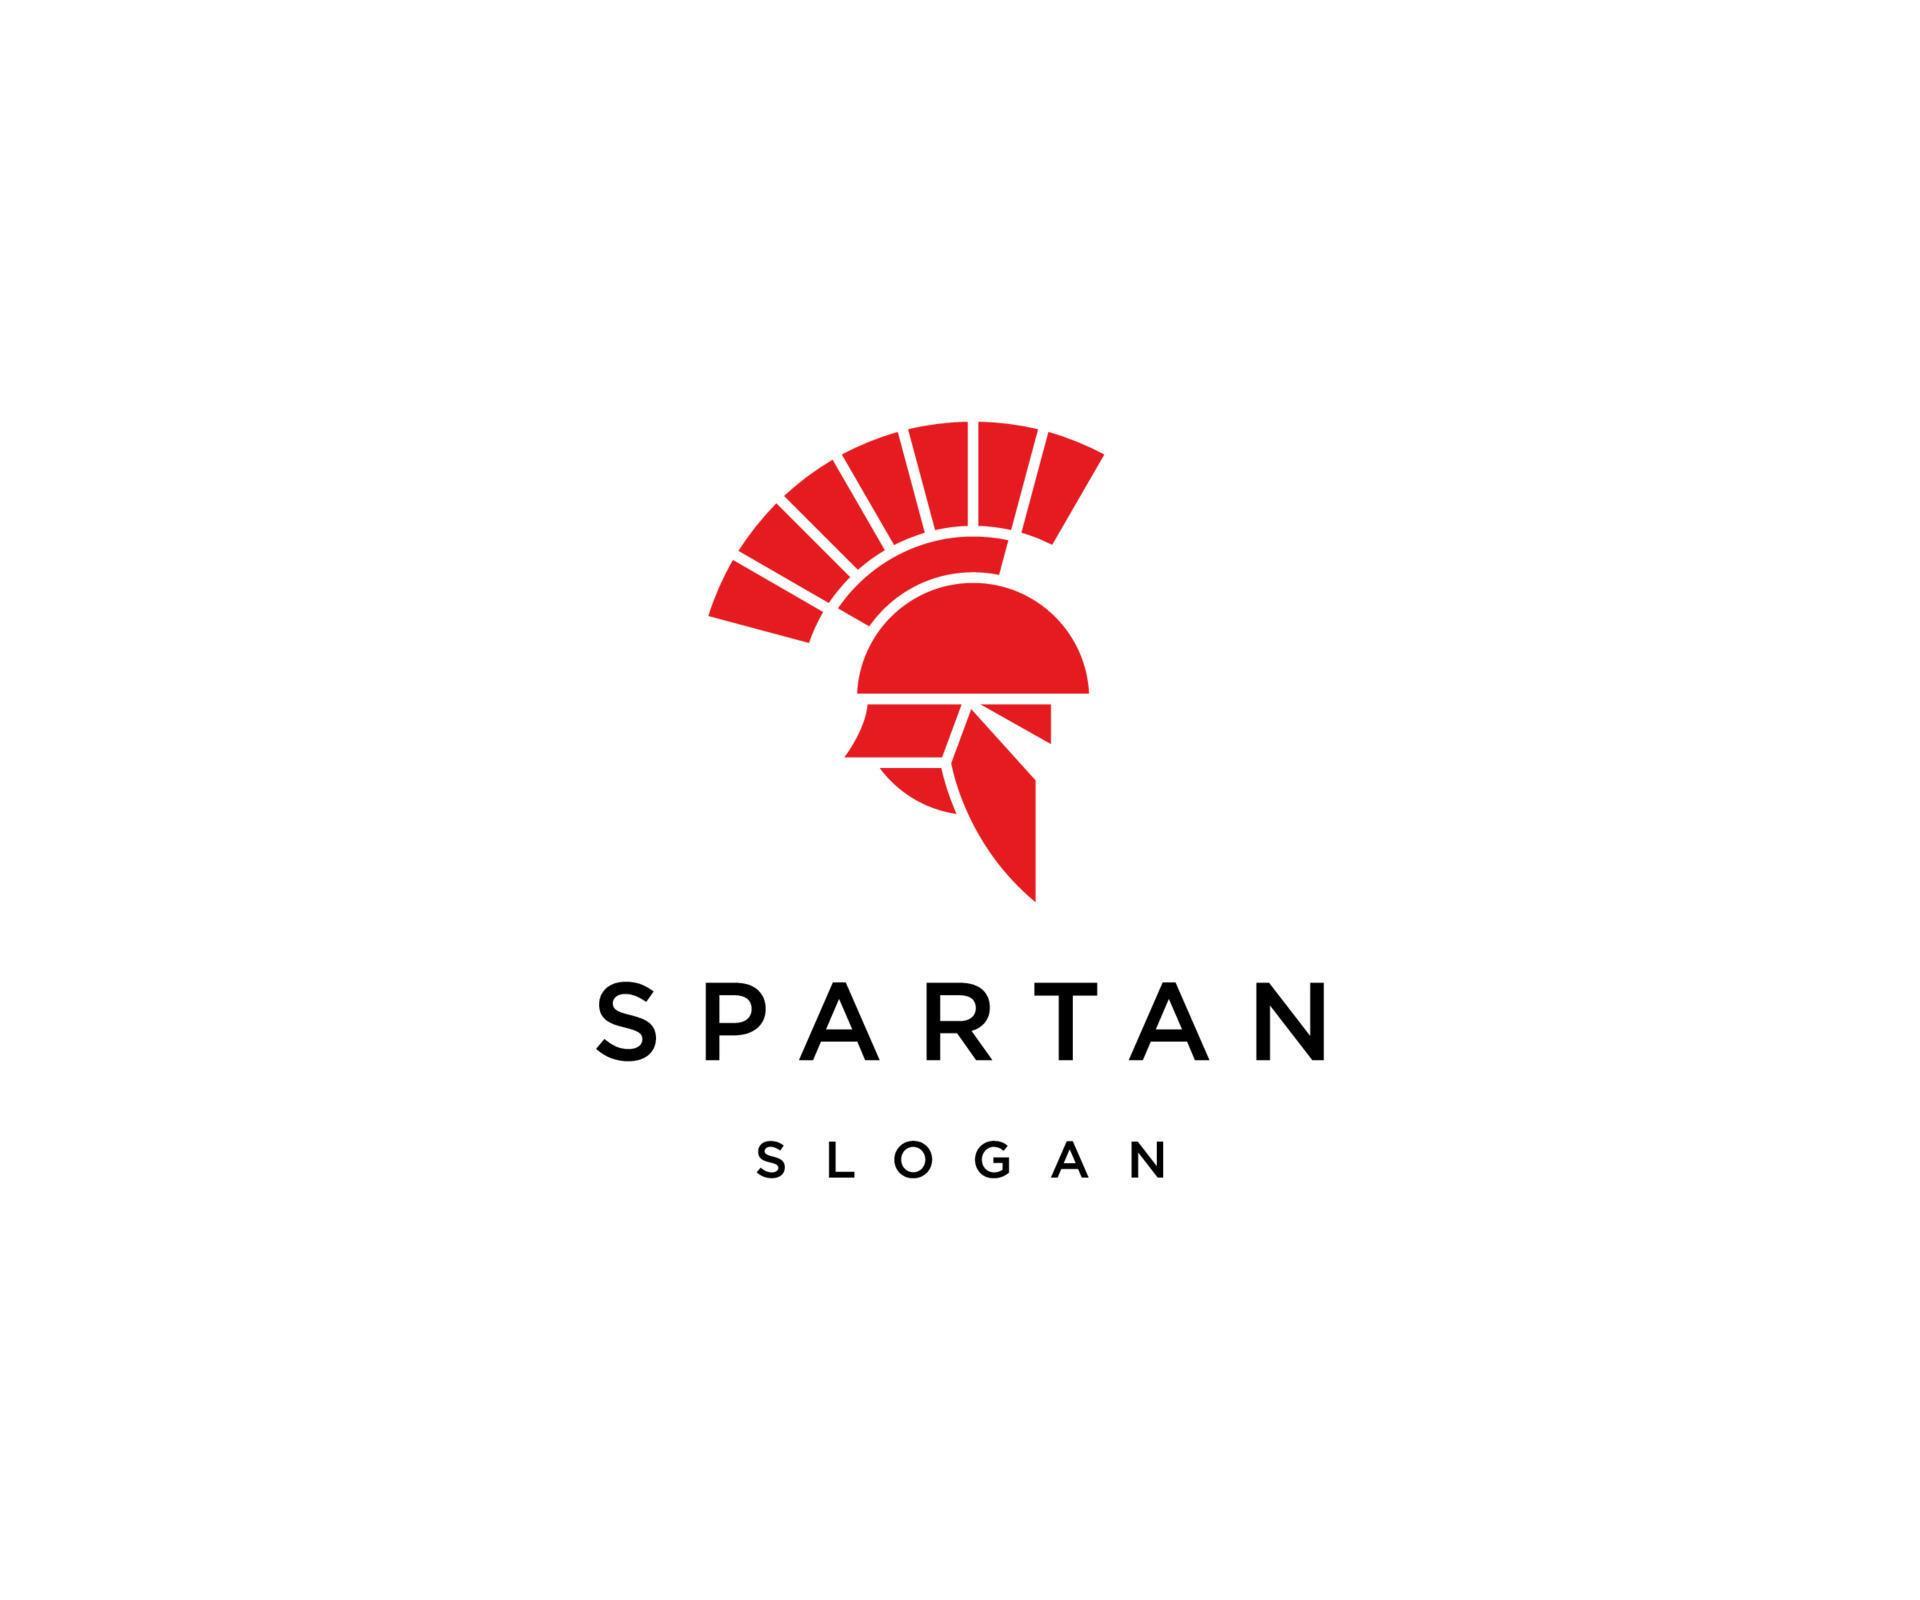 Spartan logo icon desgn template 6476407 Vector Art at Vecteezy